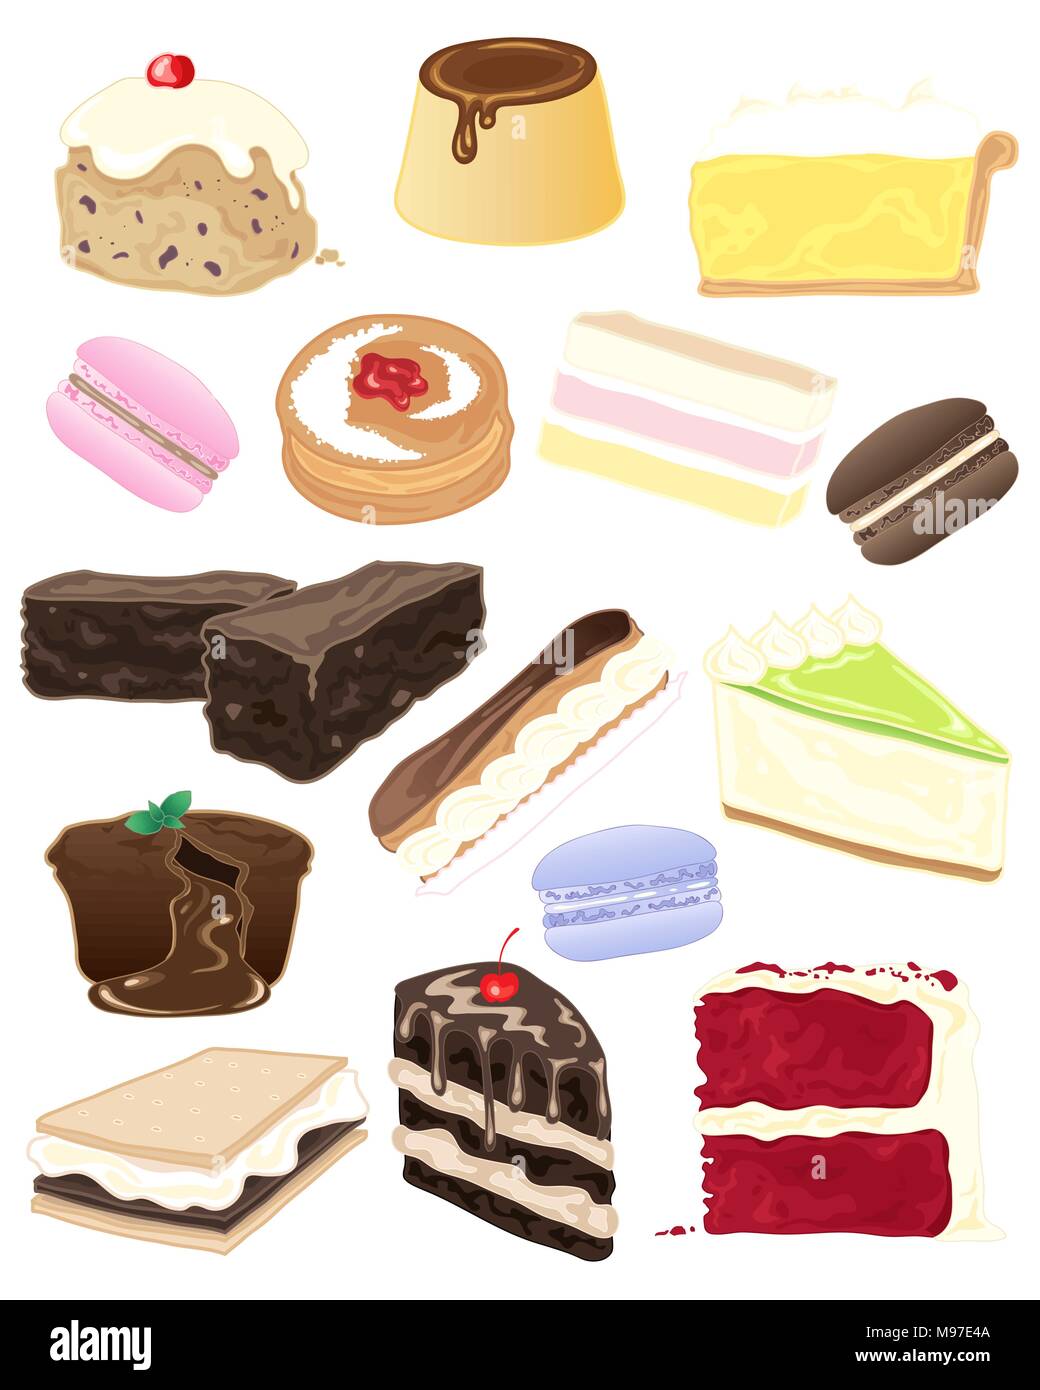 Un vecteur illustration en eps10 format d'une sélection de délicieux desserts et gâteaux sur un fond blanc Illustration de Vecteur